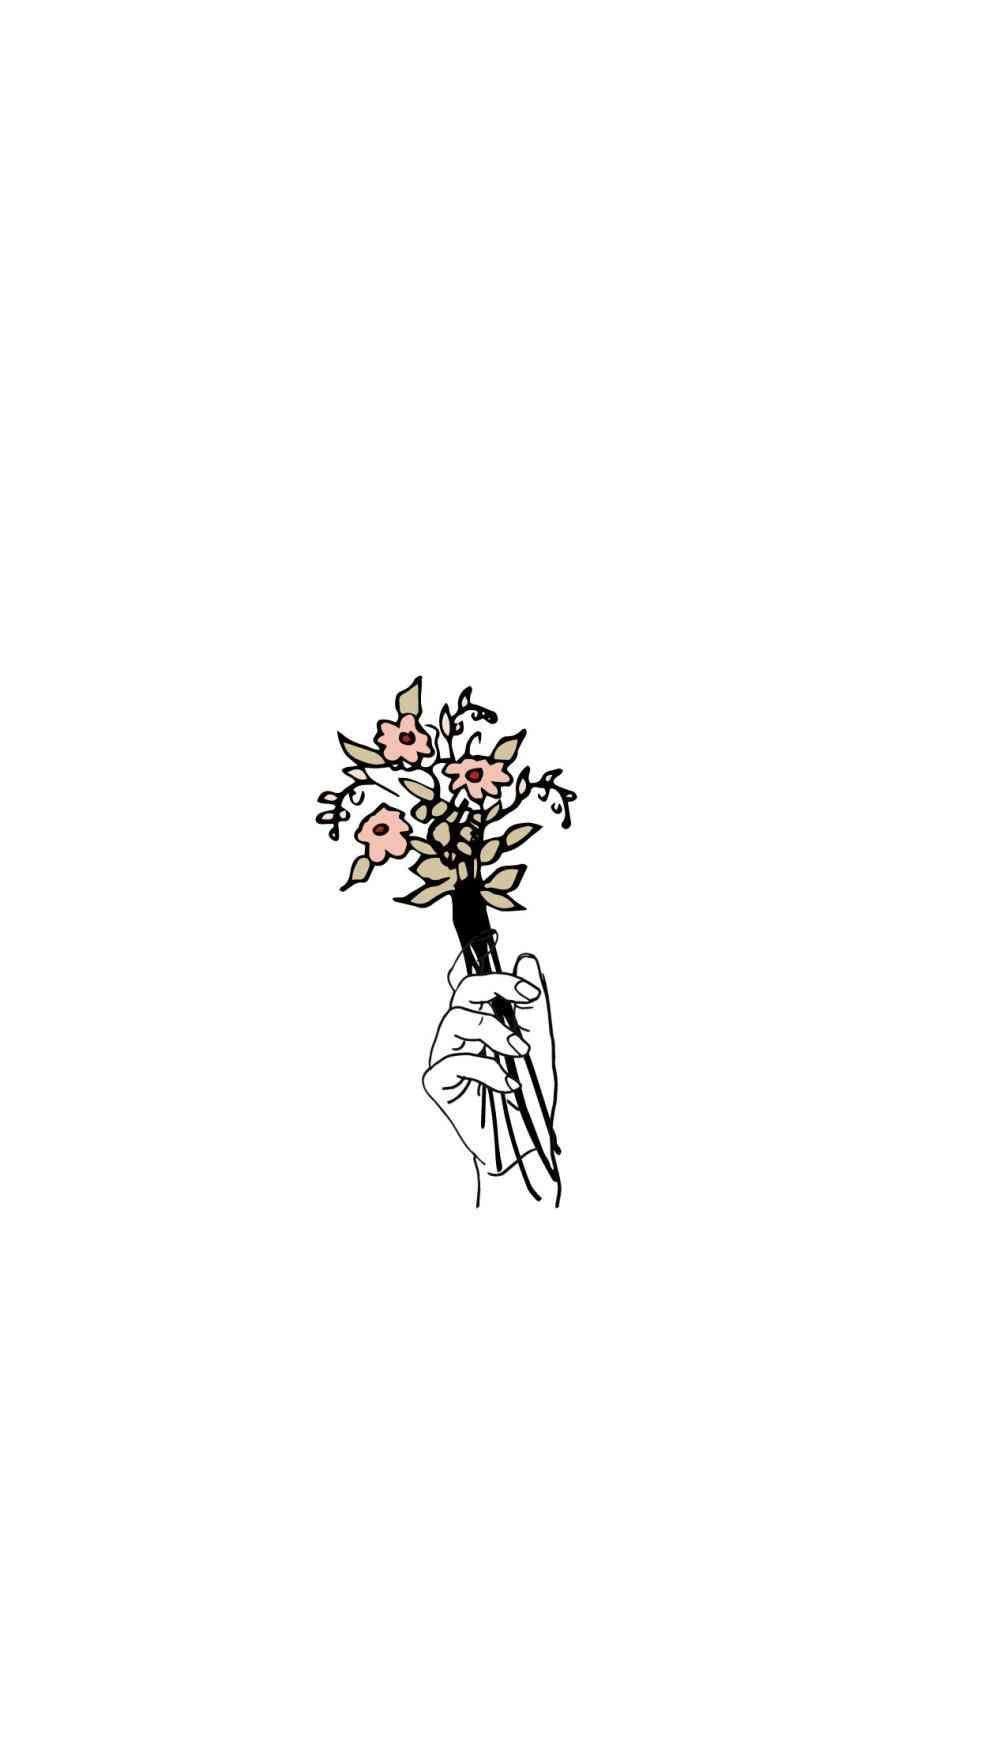 Simple Aesthetic Tumblr Flower Drawings